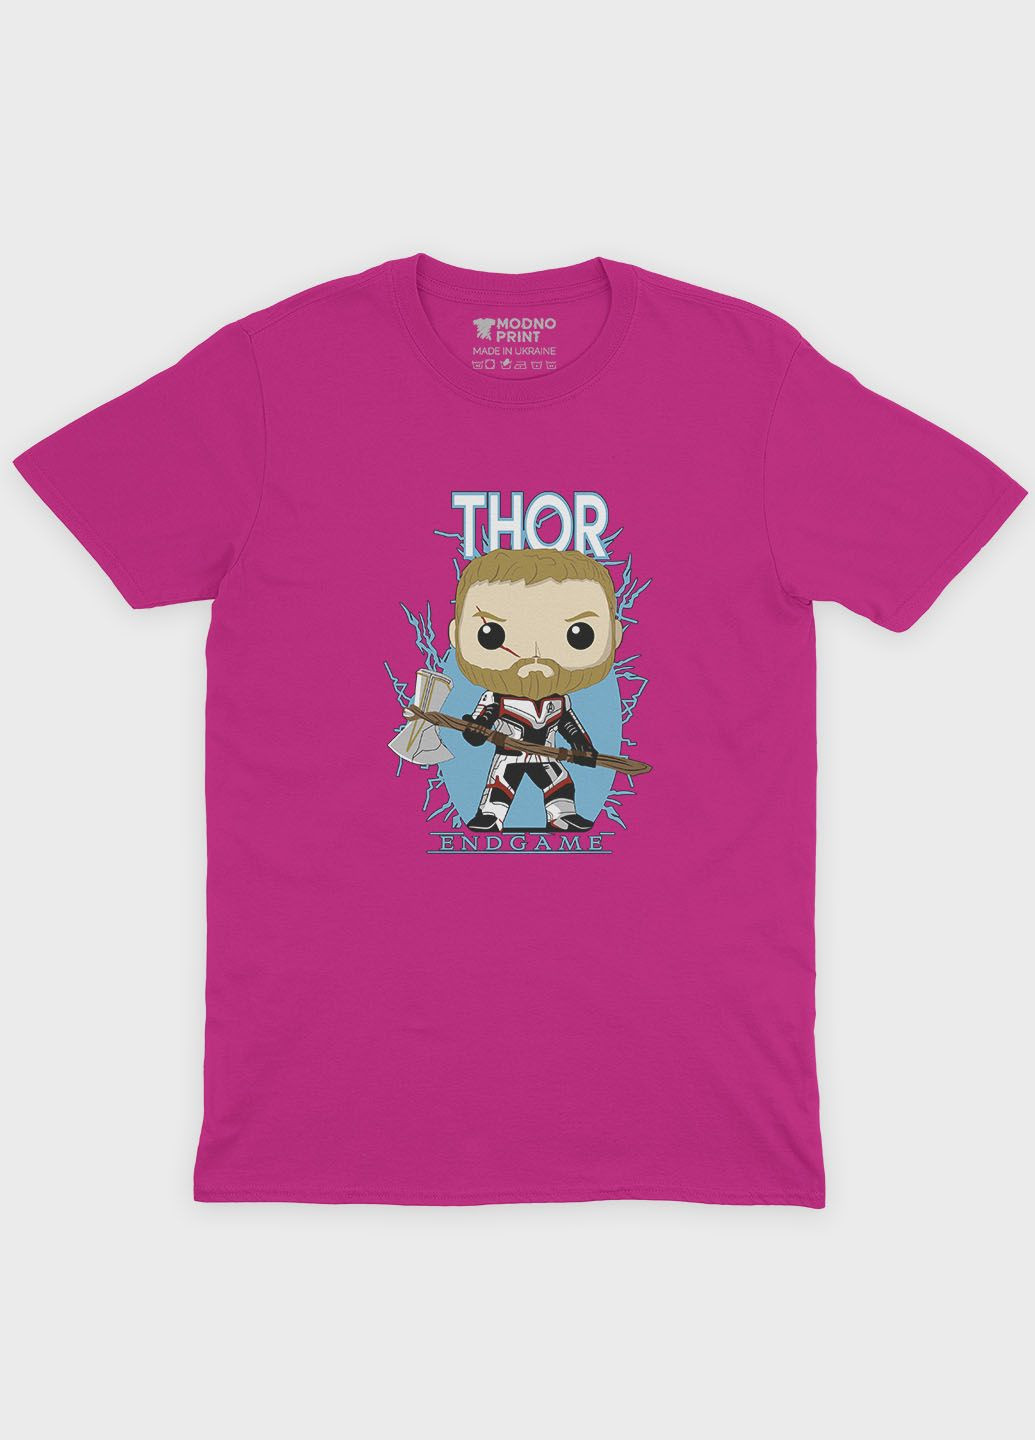 Розовая демисезонная футболка для мальчика с принтом супергероя - тор (ts001-1-fuxj-006-024-004-b) Modno